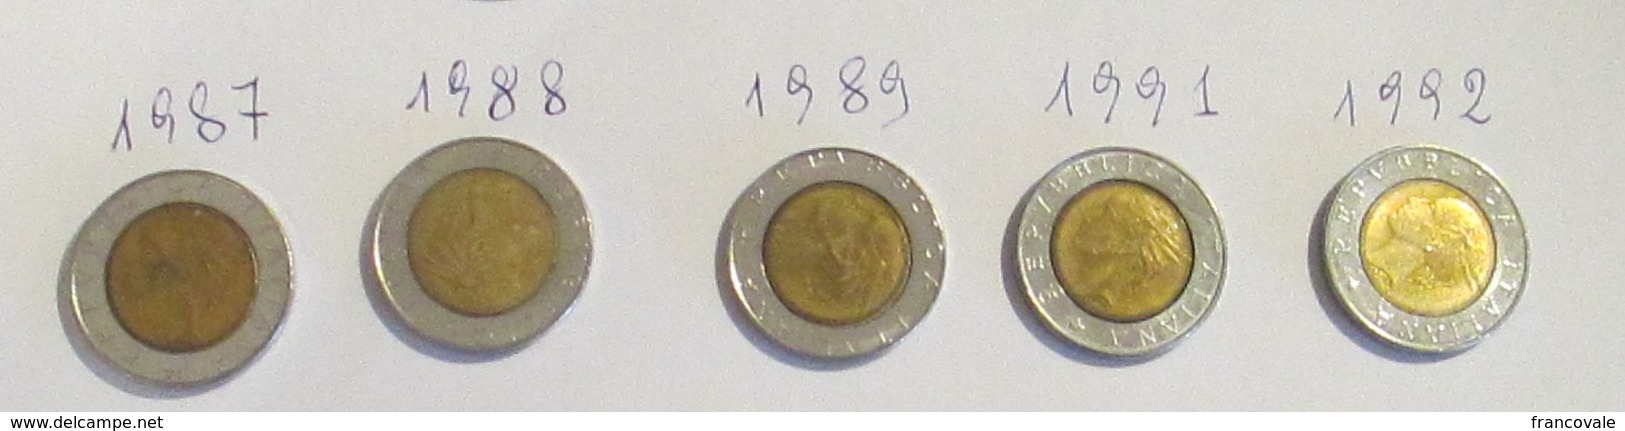 Italia 5 Monete 500 Lire Bimetallica Lotto 2 1987 1988 1989 1991 1992 - 500 Lire